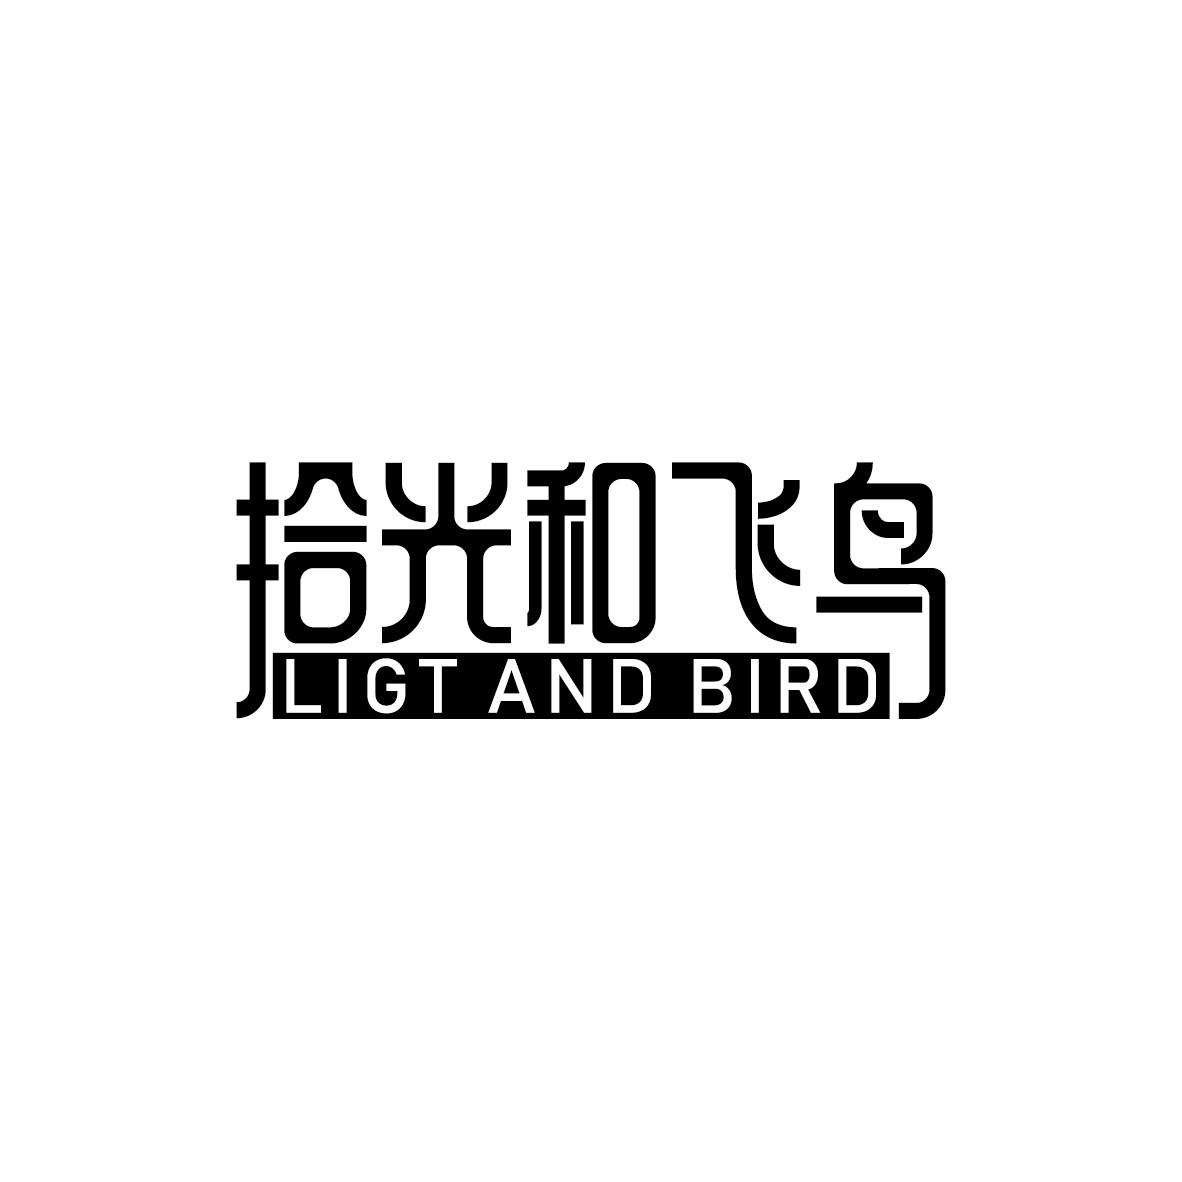 拾光和飞鸟 LIGT AND BIRD